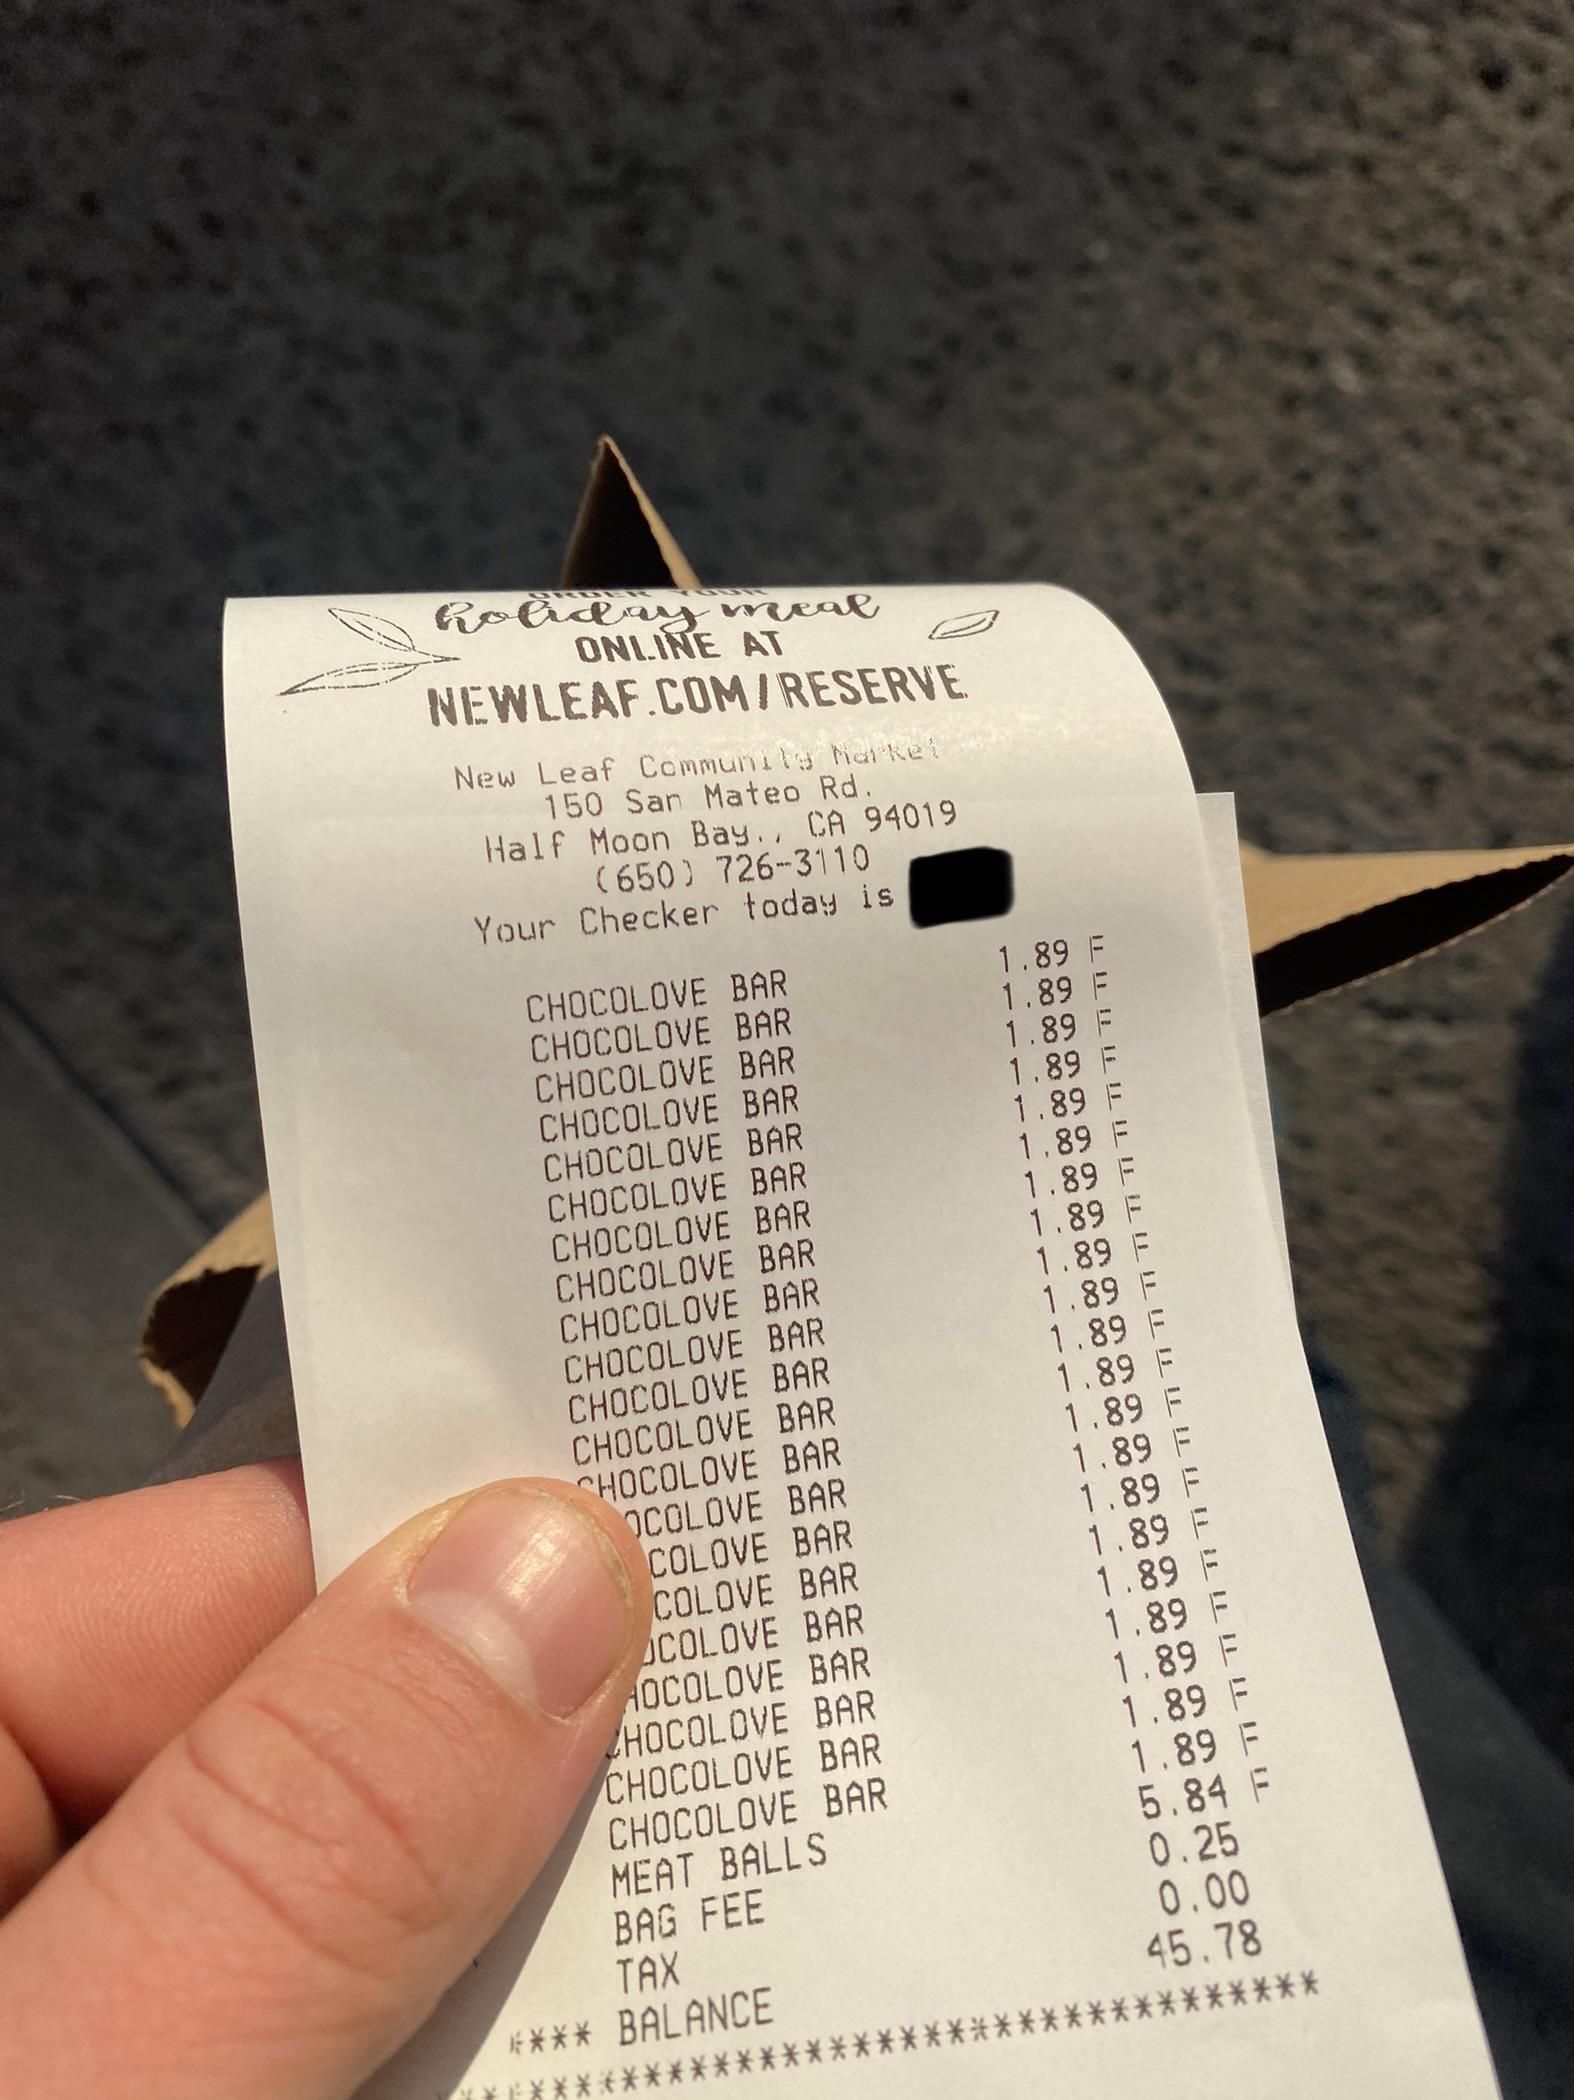 My boyfriend’s grocery receipt